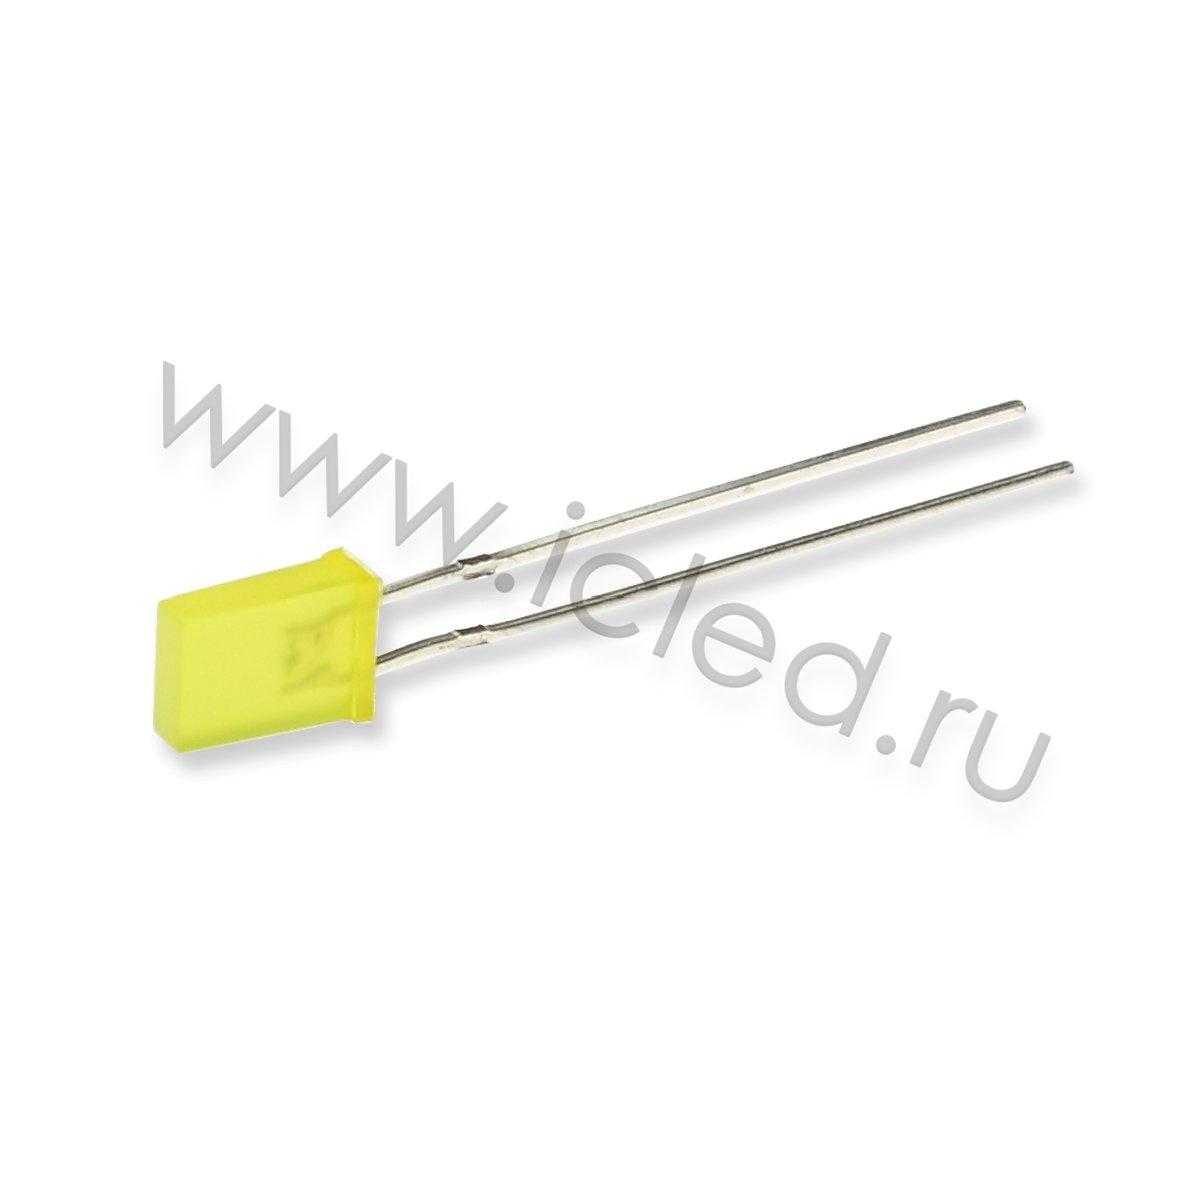 Светодиоды Светодиод ICL-2х5х7mm LE80 (yellow, 200-400mcd, diffuse)